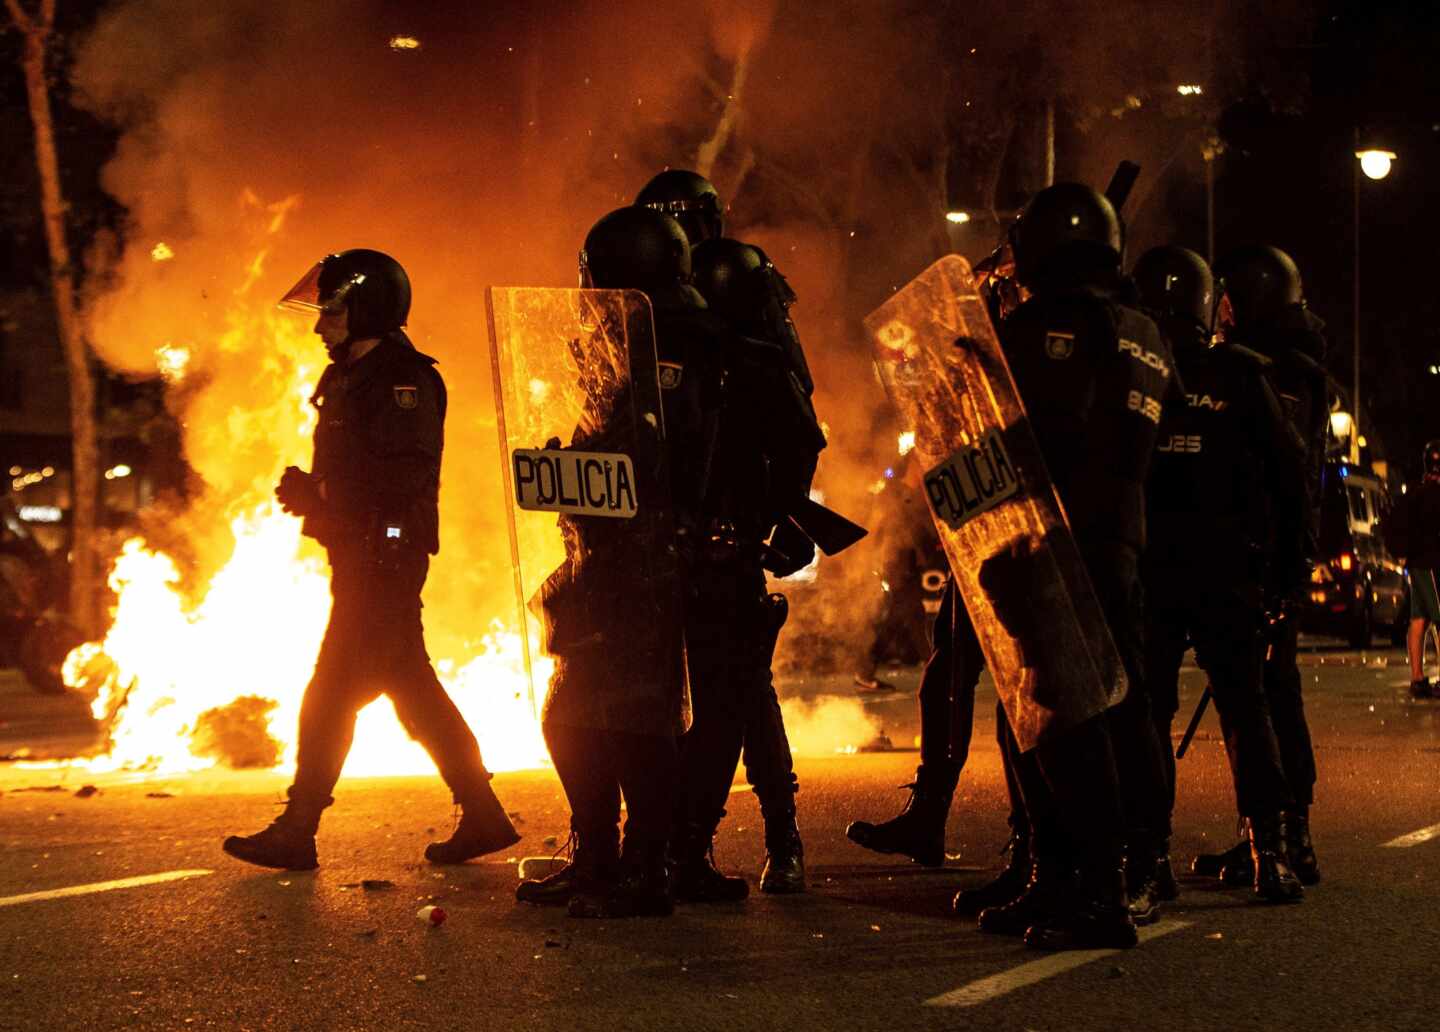 El Govern reconoce "grupos de personas violentas" en los disturbios de Barcelona